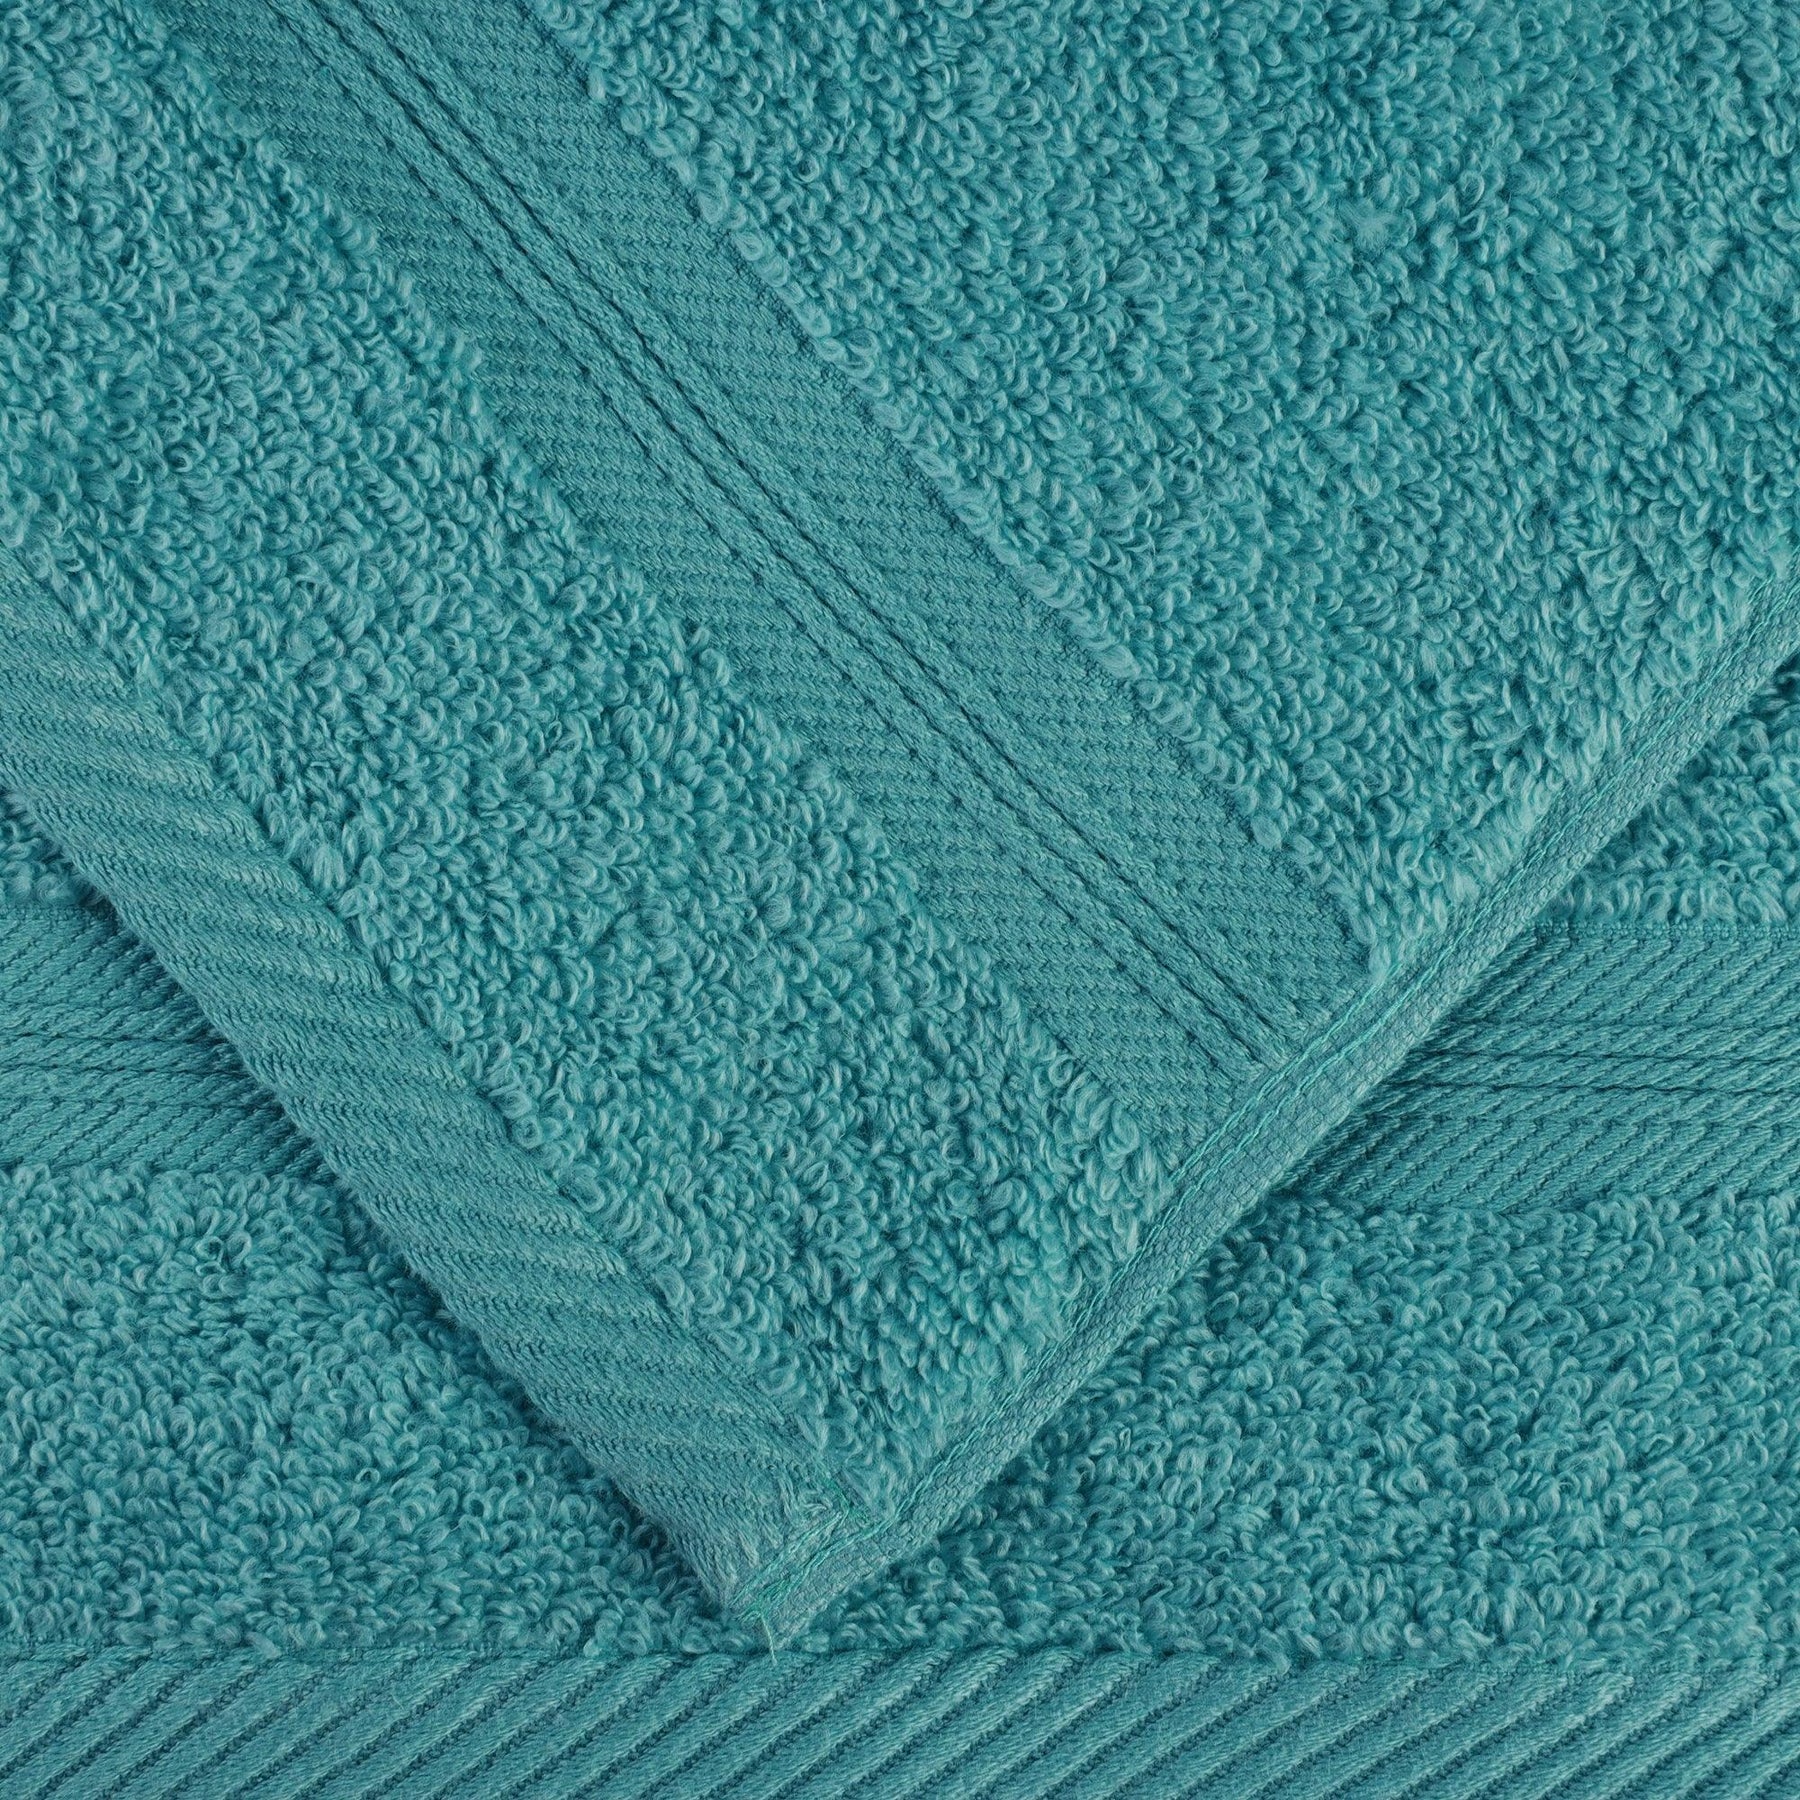 Estella 6-Piece Sonoma Blue 0 Twist Cotton Bath Towel Set 5321T7B497 - The  Home Depot